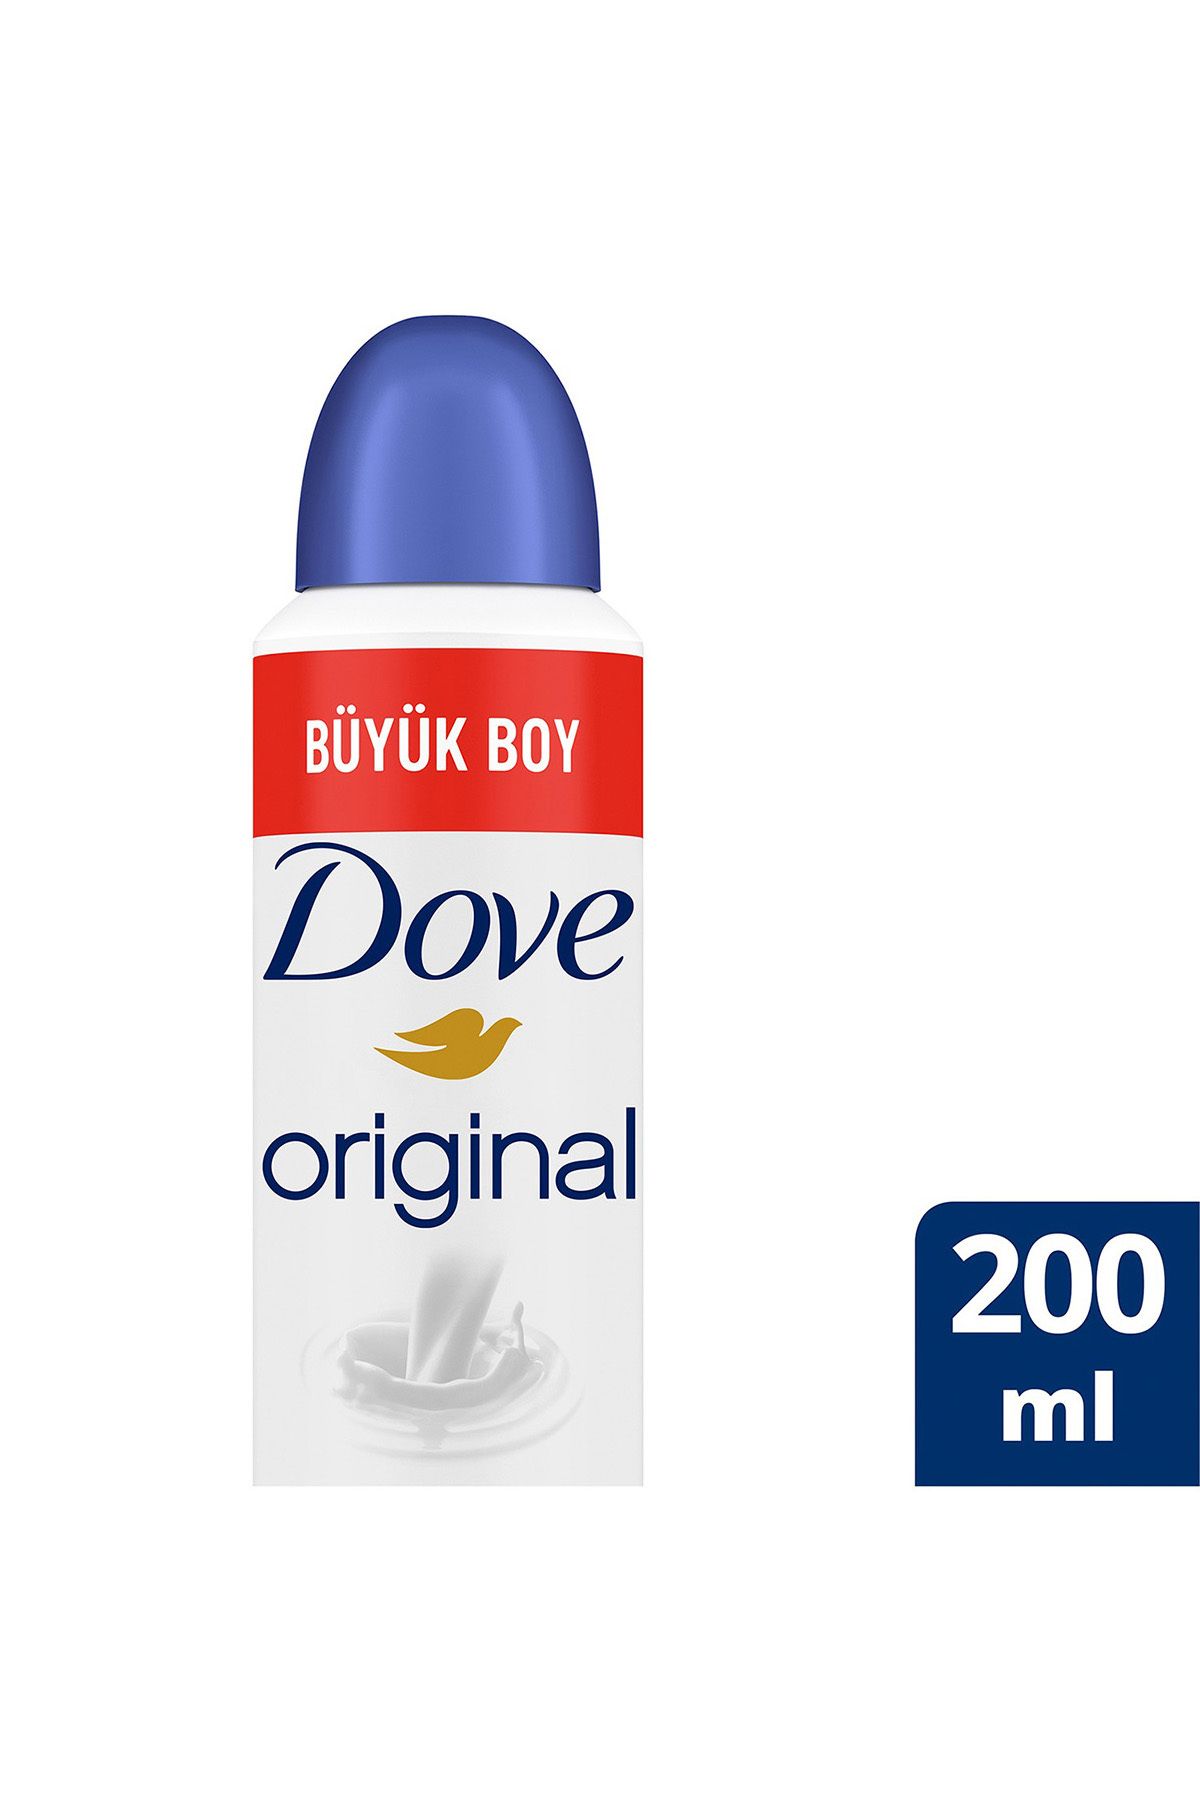 Dove Kadın Sprey Deodorant Original 1/4 Nemlendirici Krem Etkili Büyük Boy 200ml x1 Adet